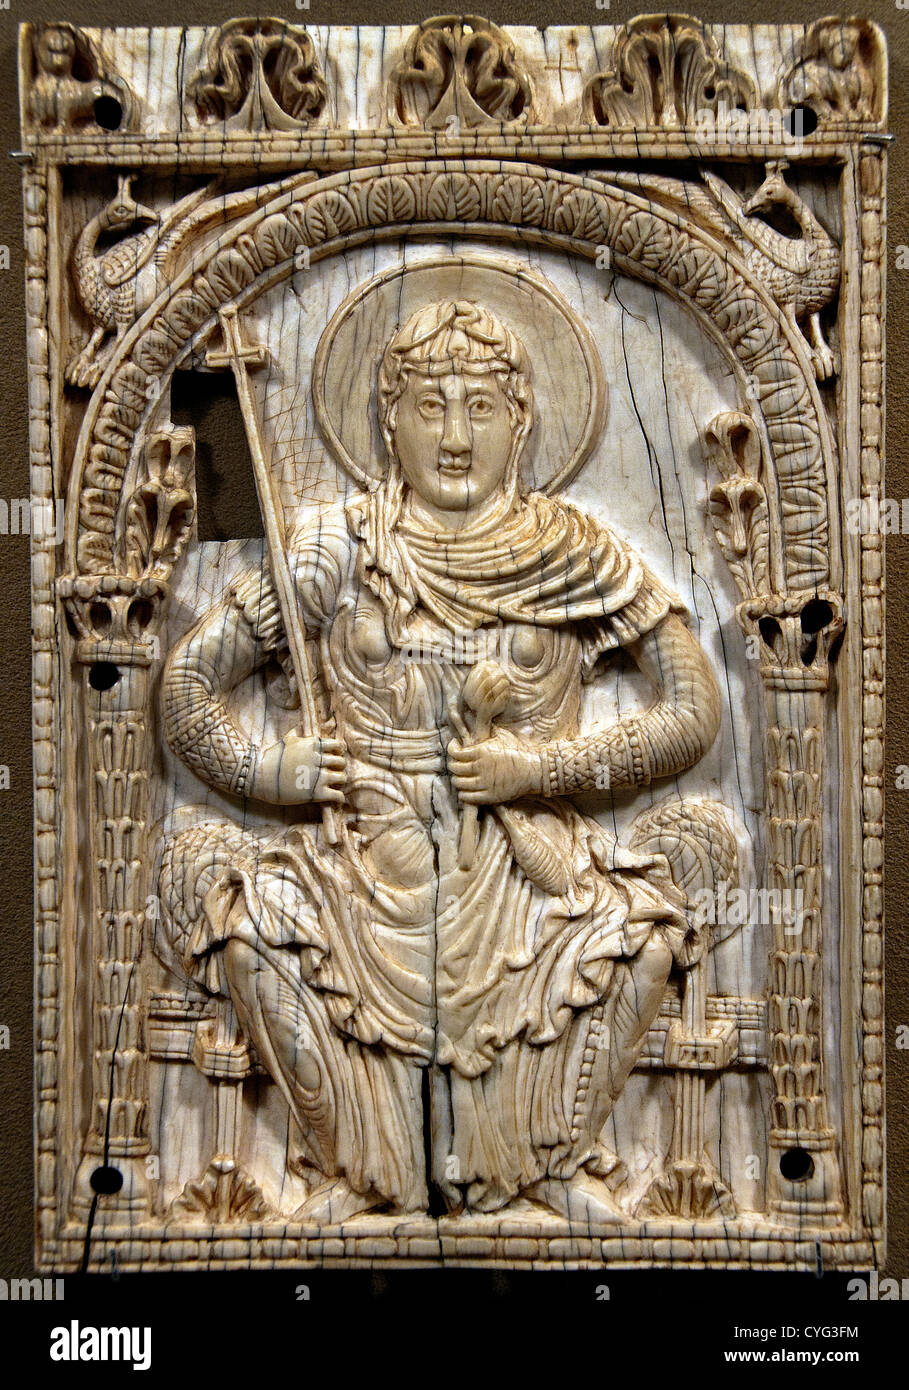 La placca con la Vergine Maria come la personificazione della Chiesa 800-825 tedesco Aachen Germania avorio carolingio 22 cm Foto Stock